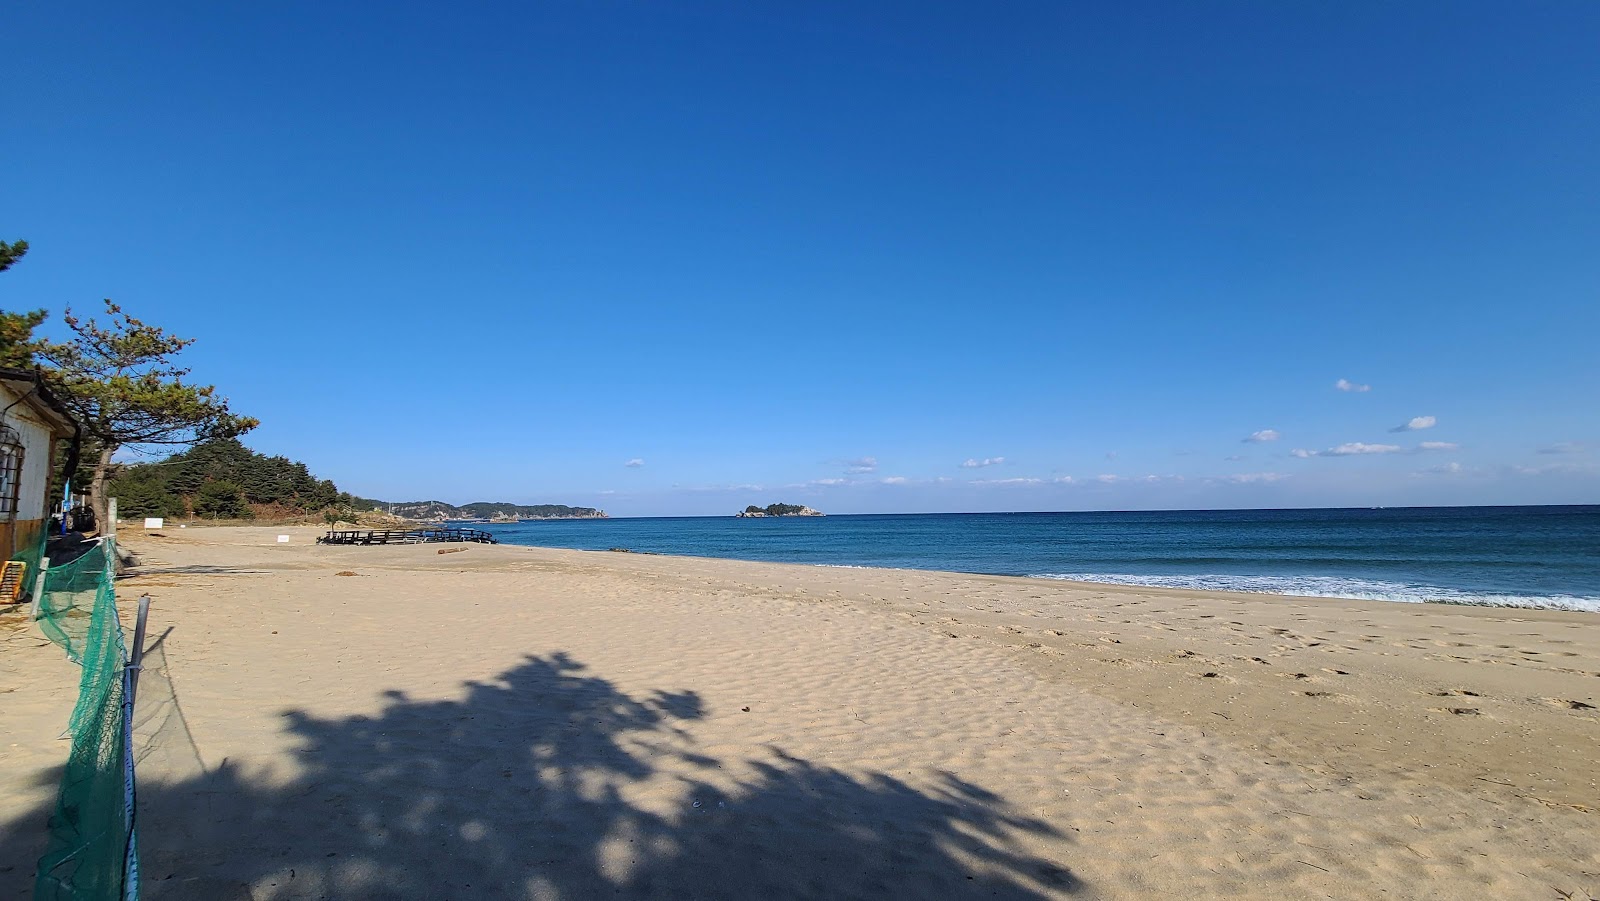 Fotografie cu Jangyo Beach cu o suprafață de nisip strălucitor